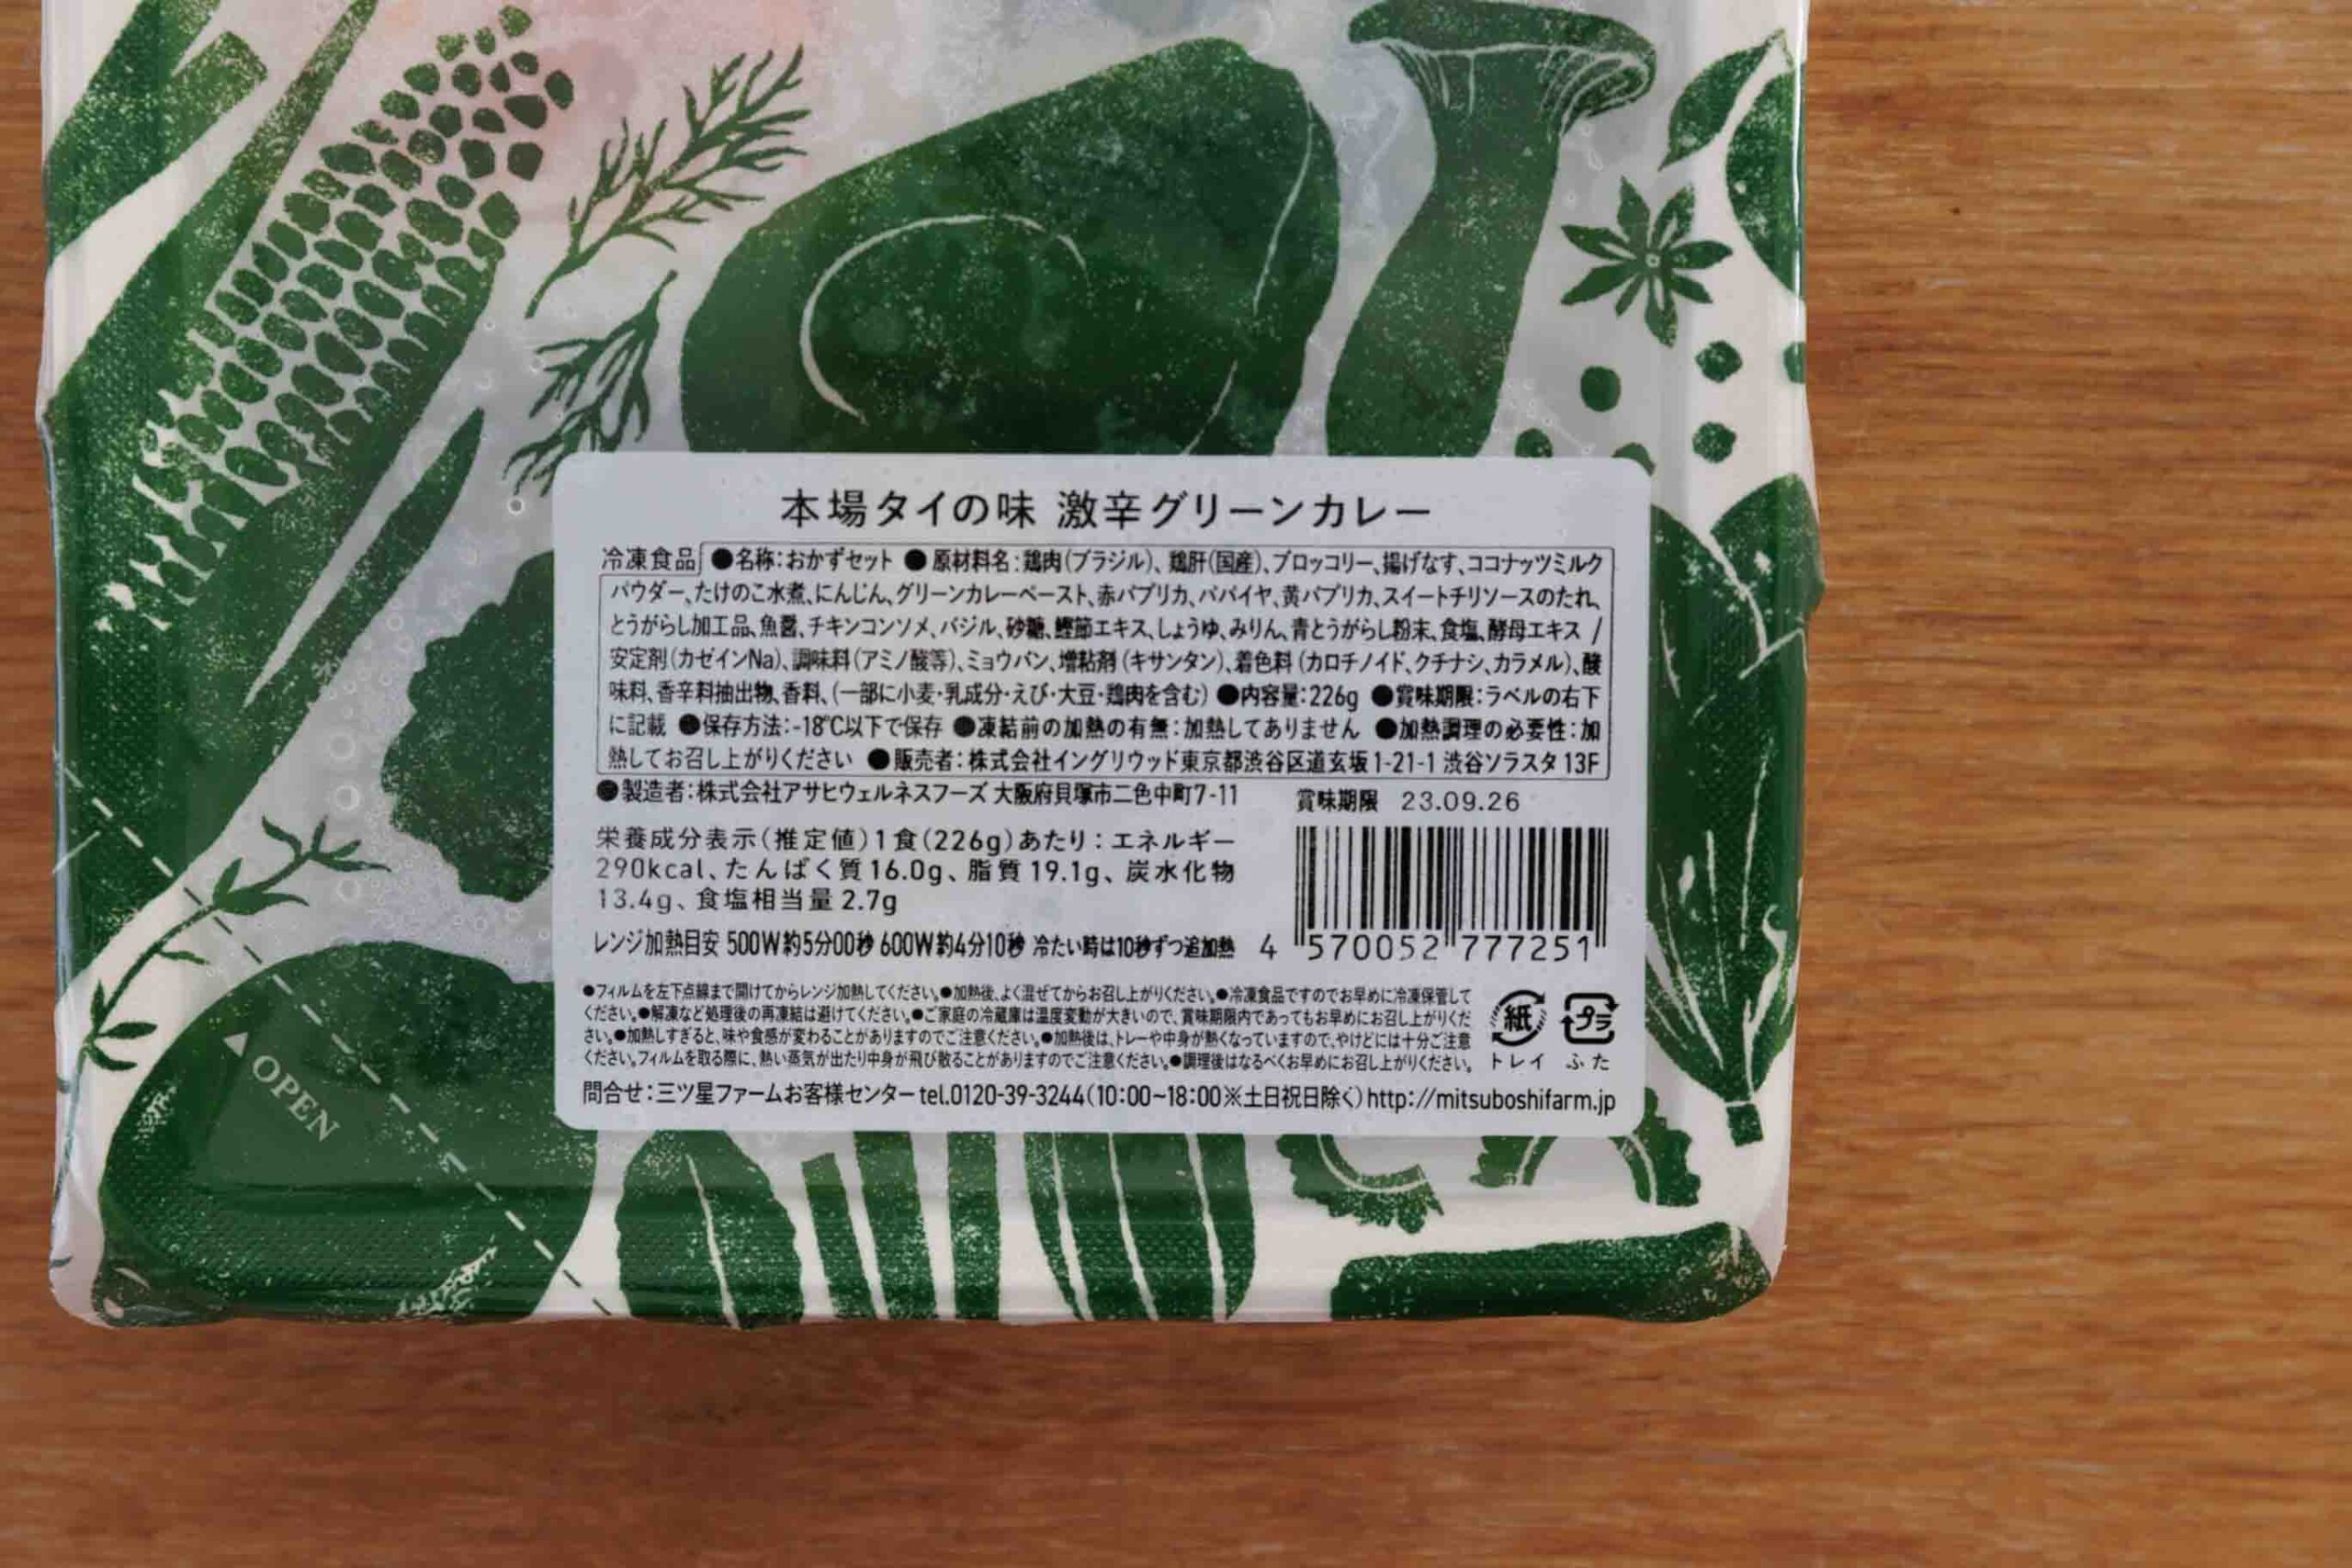 三ツ星ファーム「本場タイの味 激辛グリーンカレー」のパッケージの拡大写真